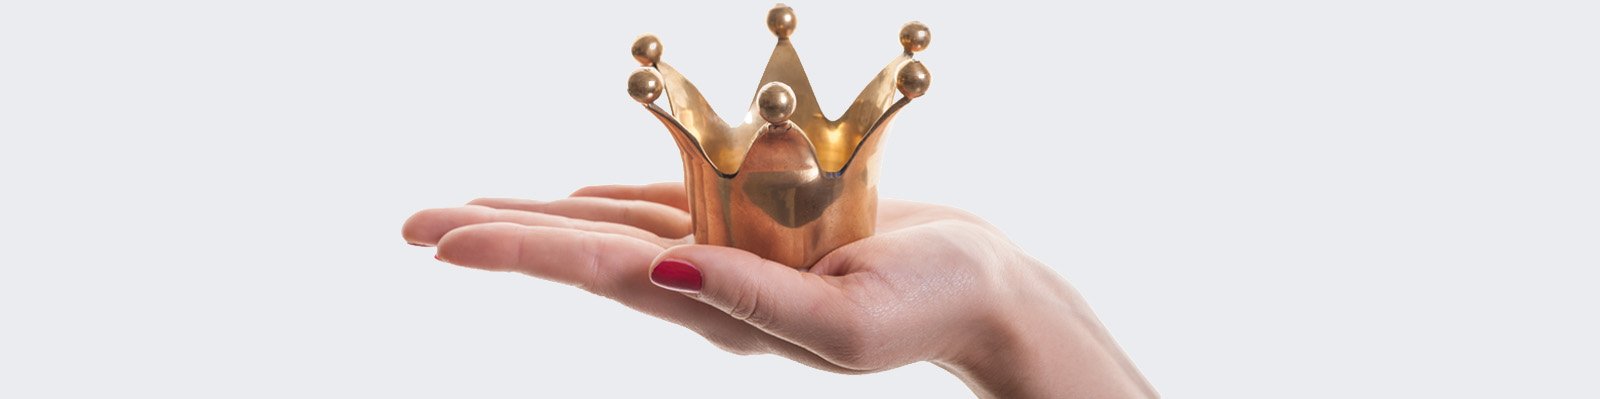 Frau hält eine goldene Krone auf ausgestreckter Handfläche krone_auf_hand_AdobeStock_46313095.jpg